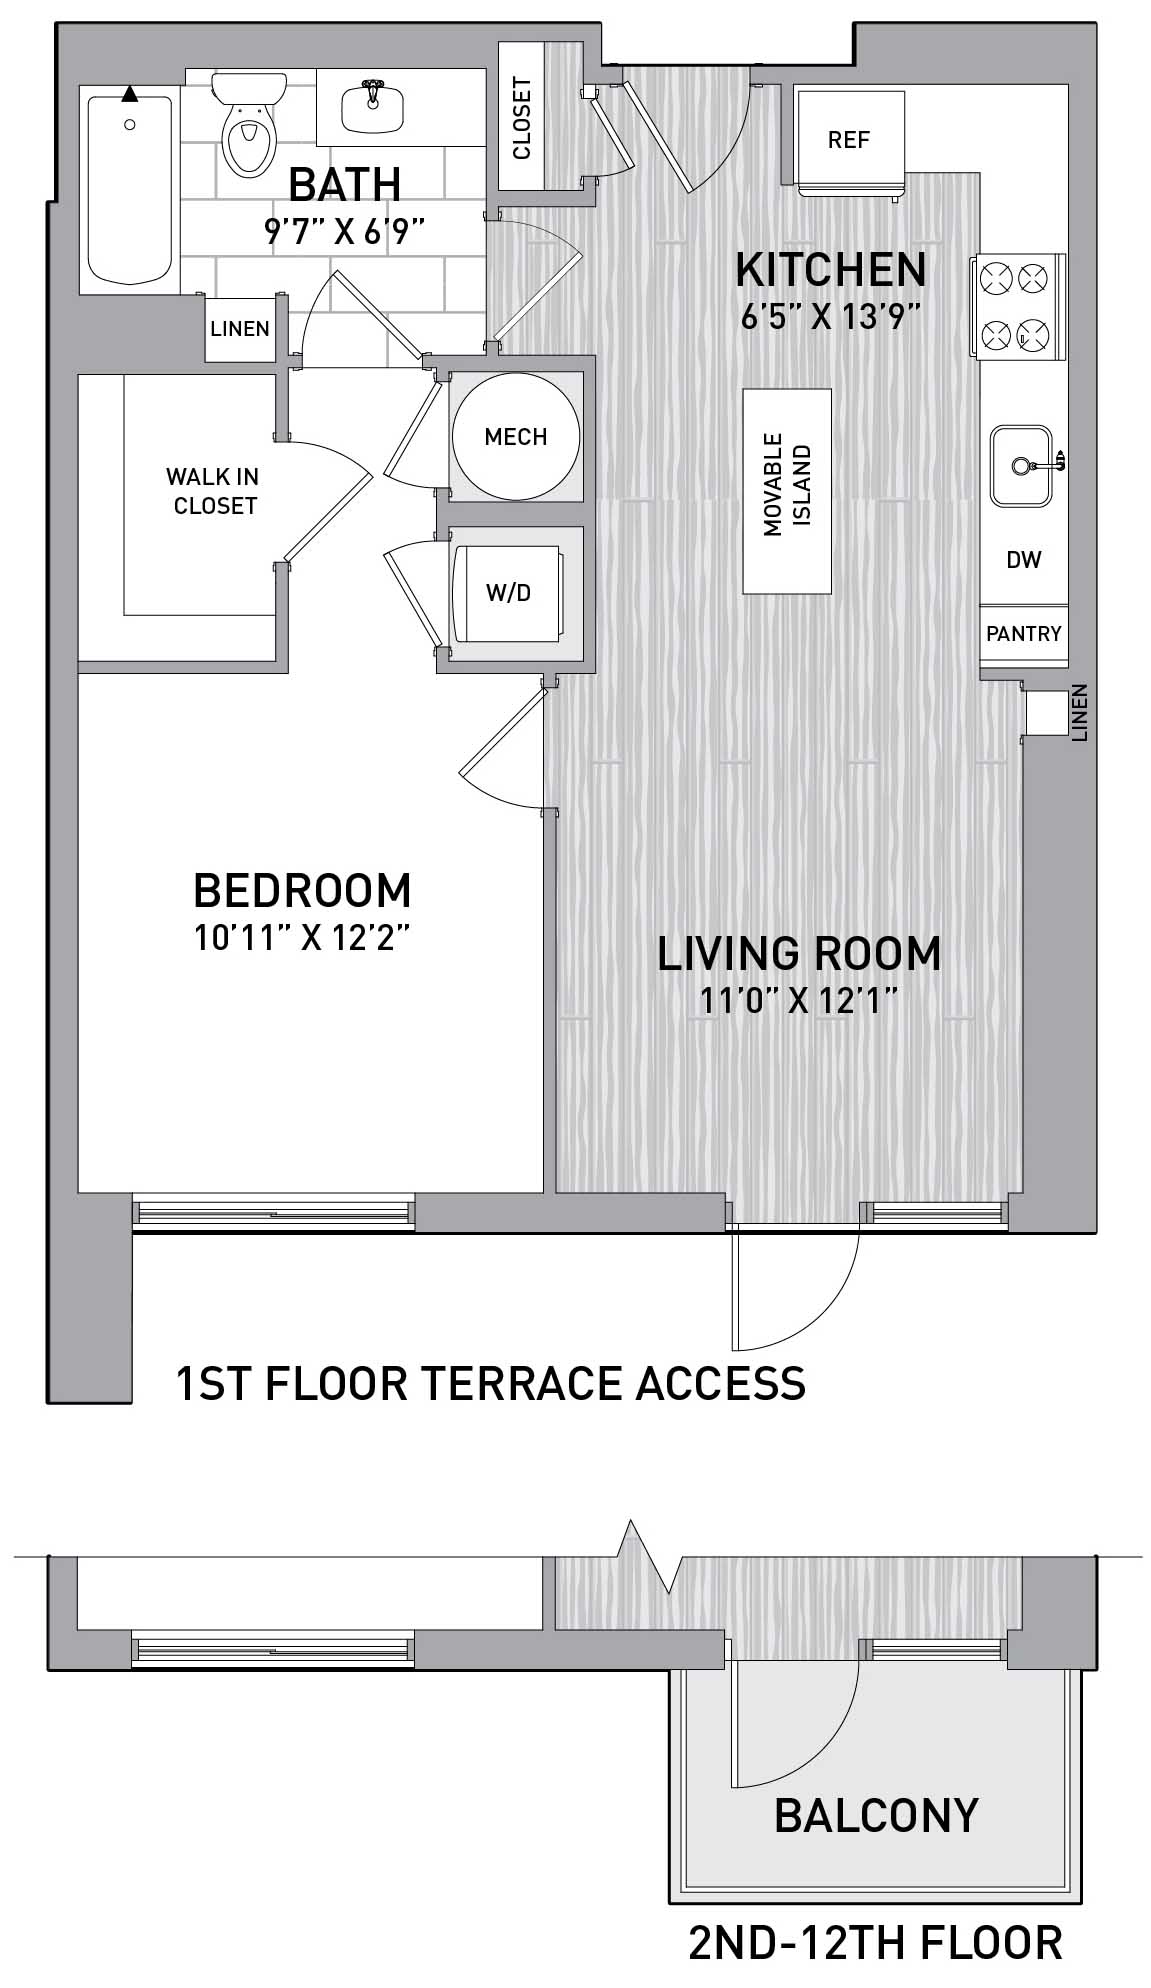 Floorplan Image of unit 151-0908